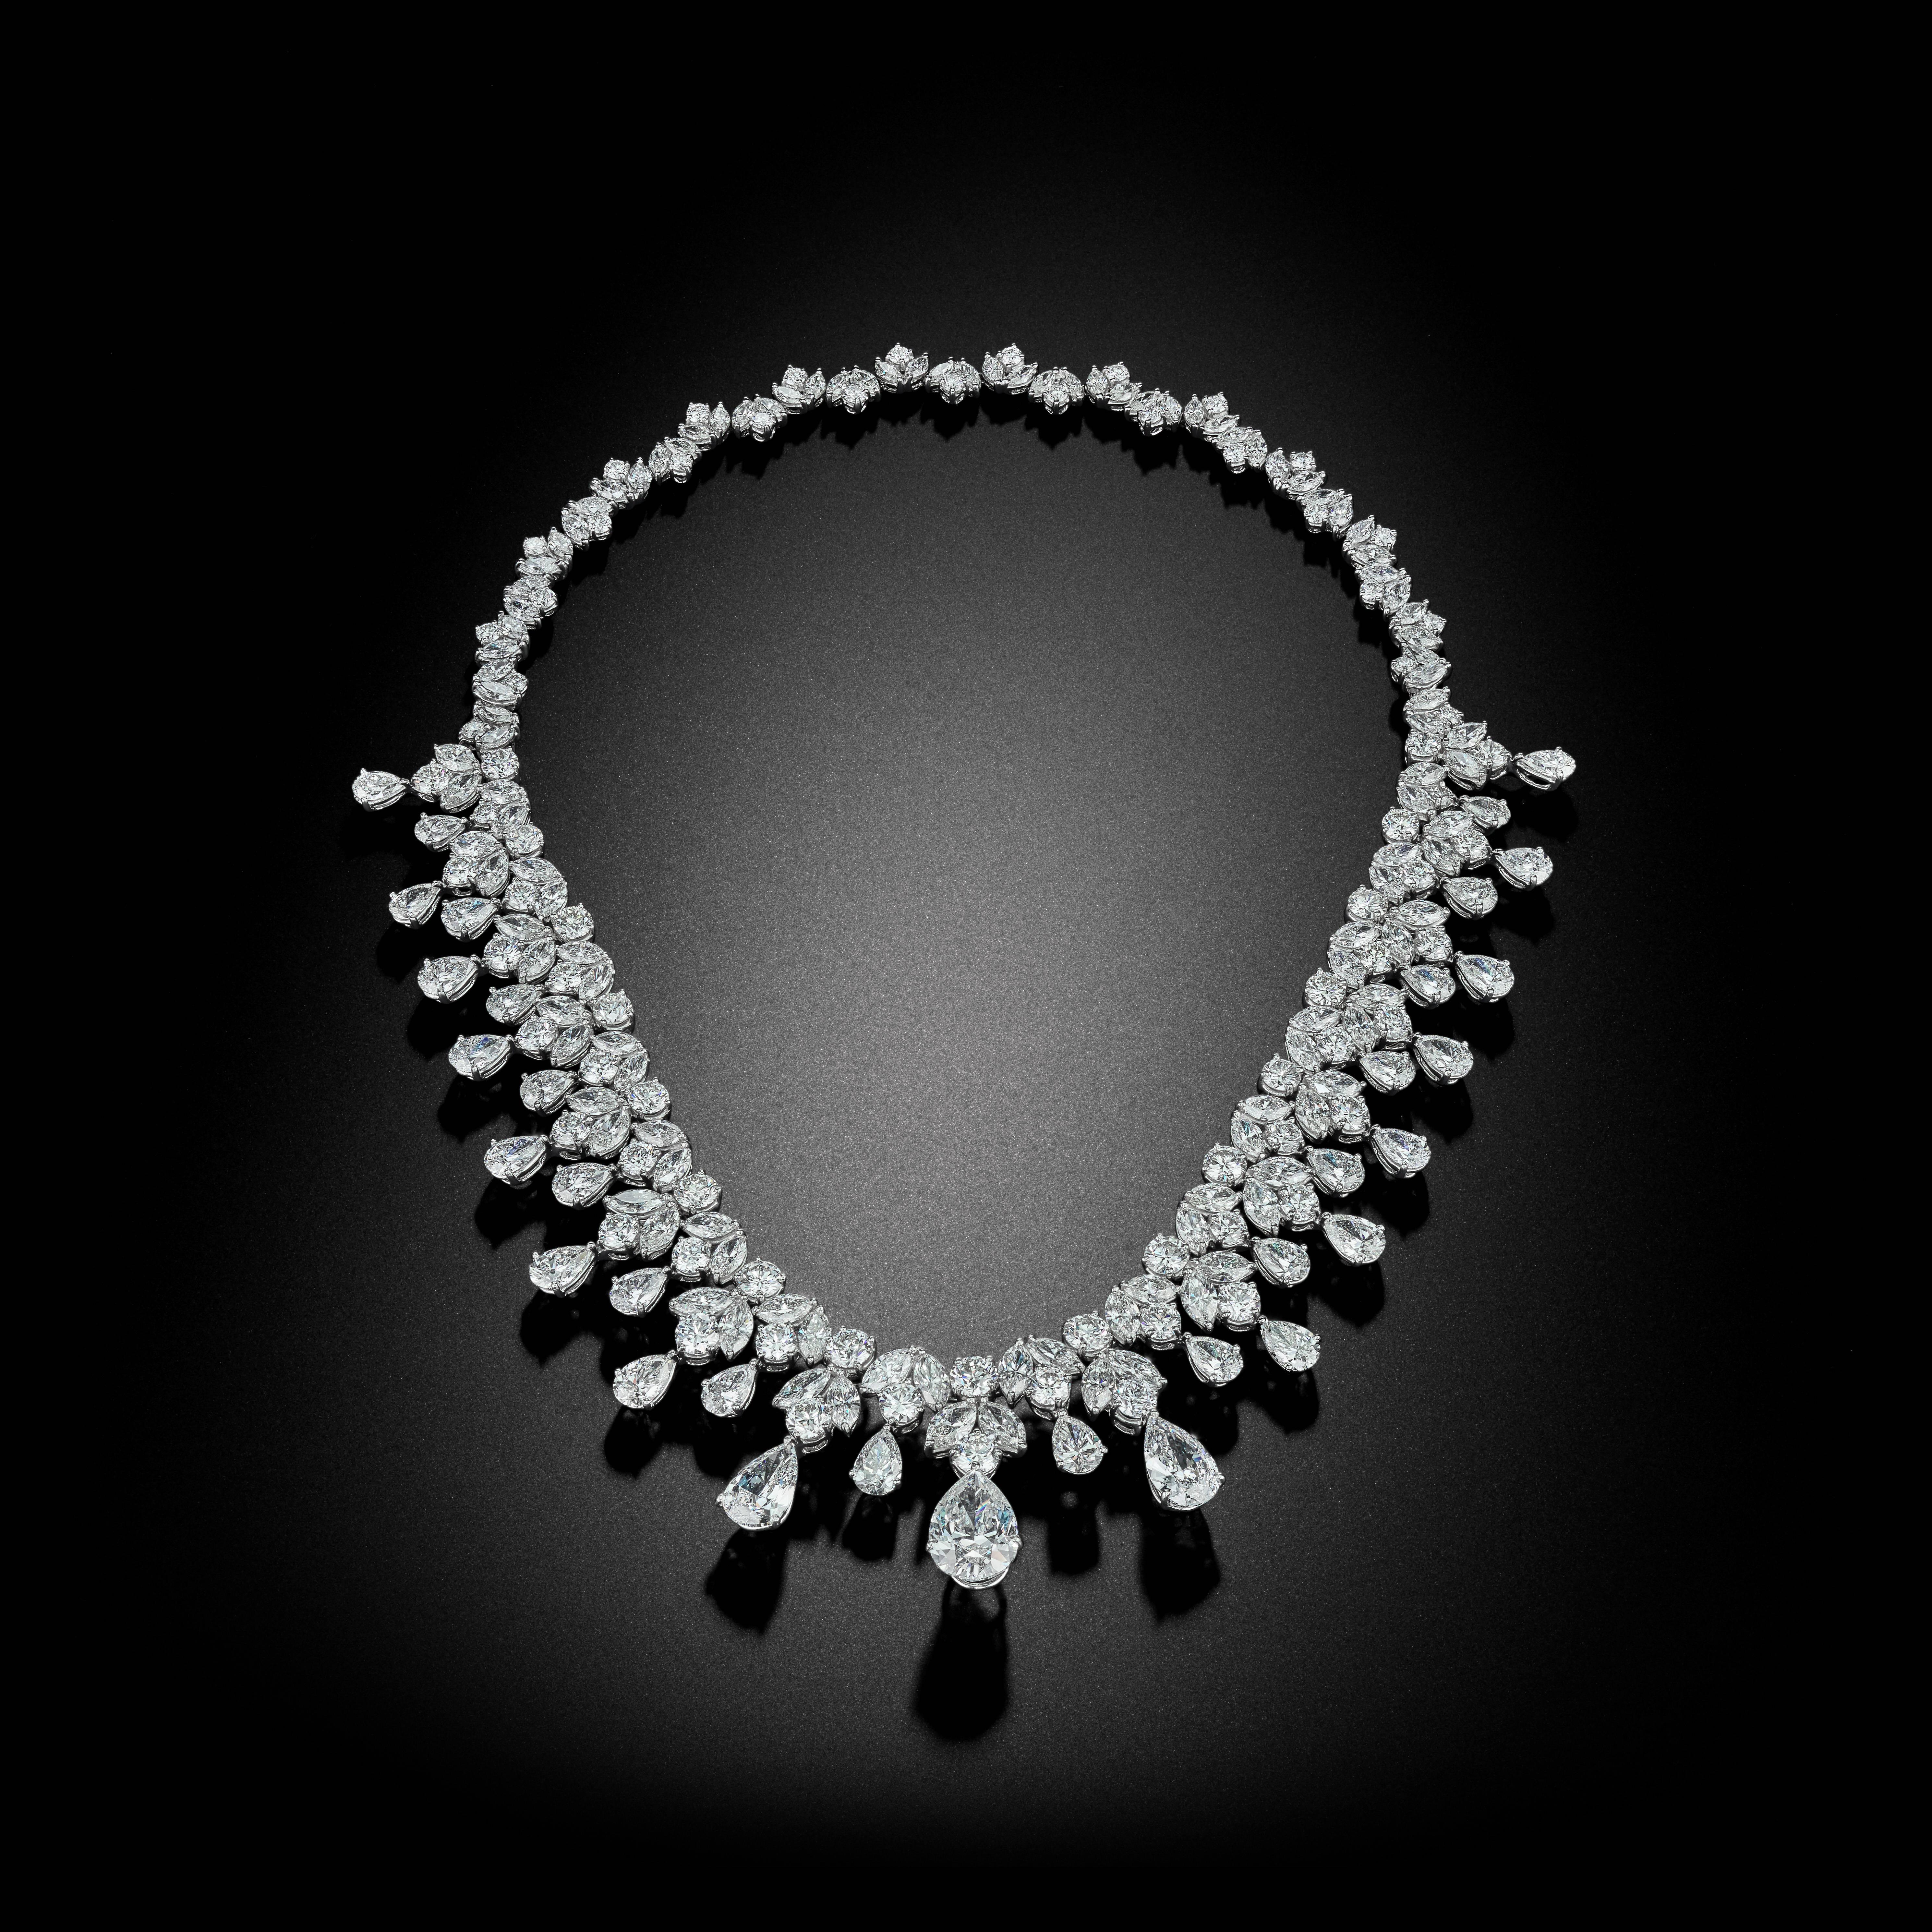 Diese handgefertigte Platin-Halskette hat über 96 Karat Diamanten in Birnenform und Brillantschliff. Sie kann sowohl als Halskette als auch als schillernde Tiara getragen werden.  Seine Handwerkskunst ist wunderschön und äußerst einzigartig. Es